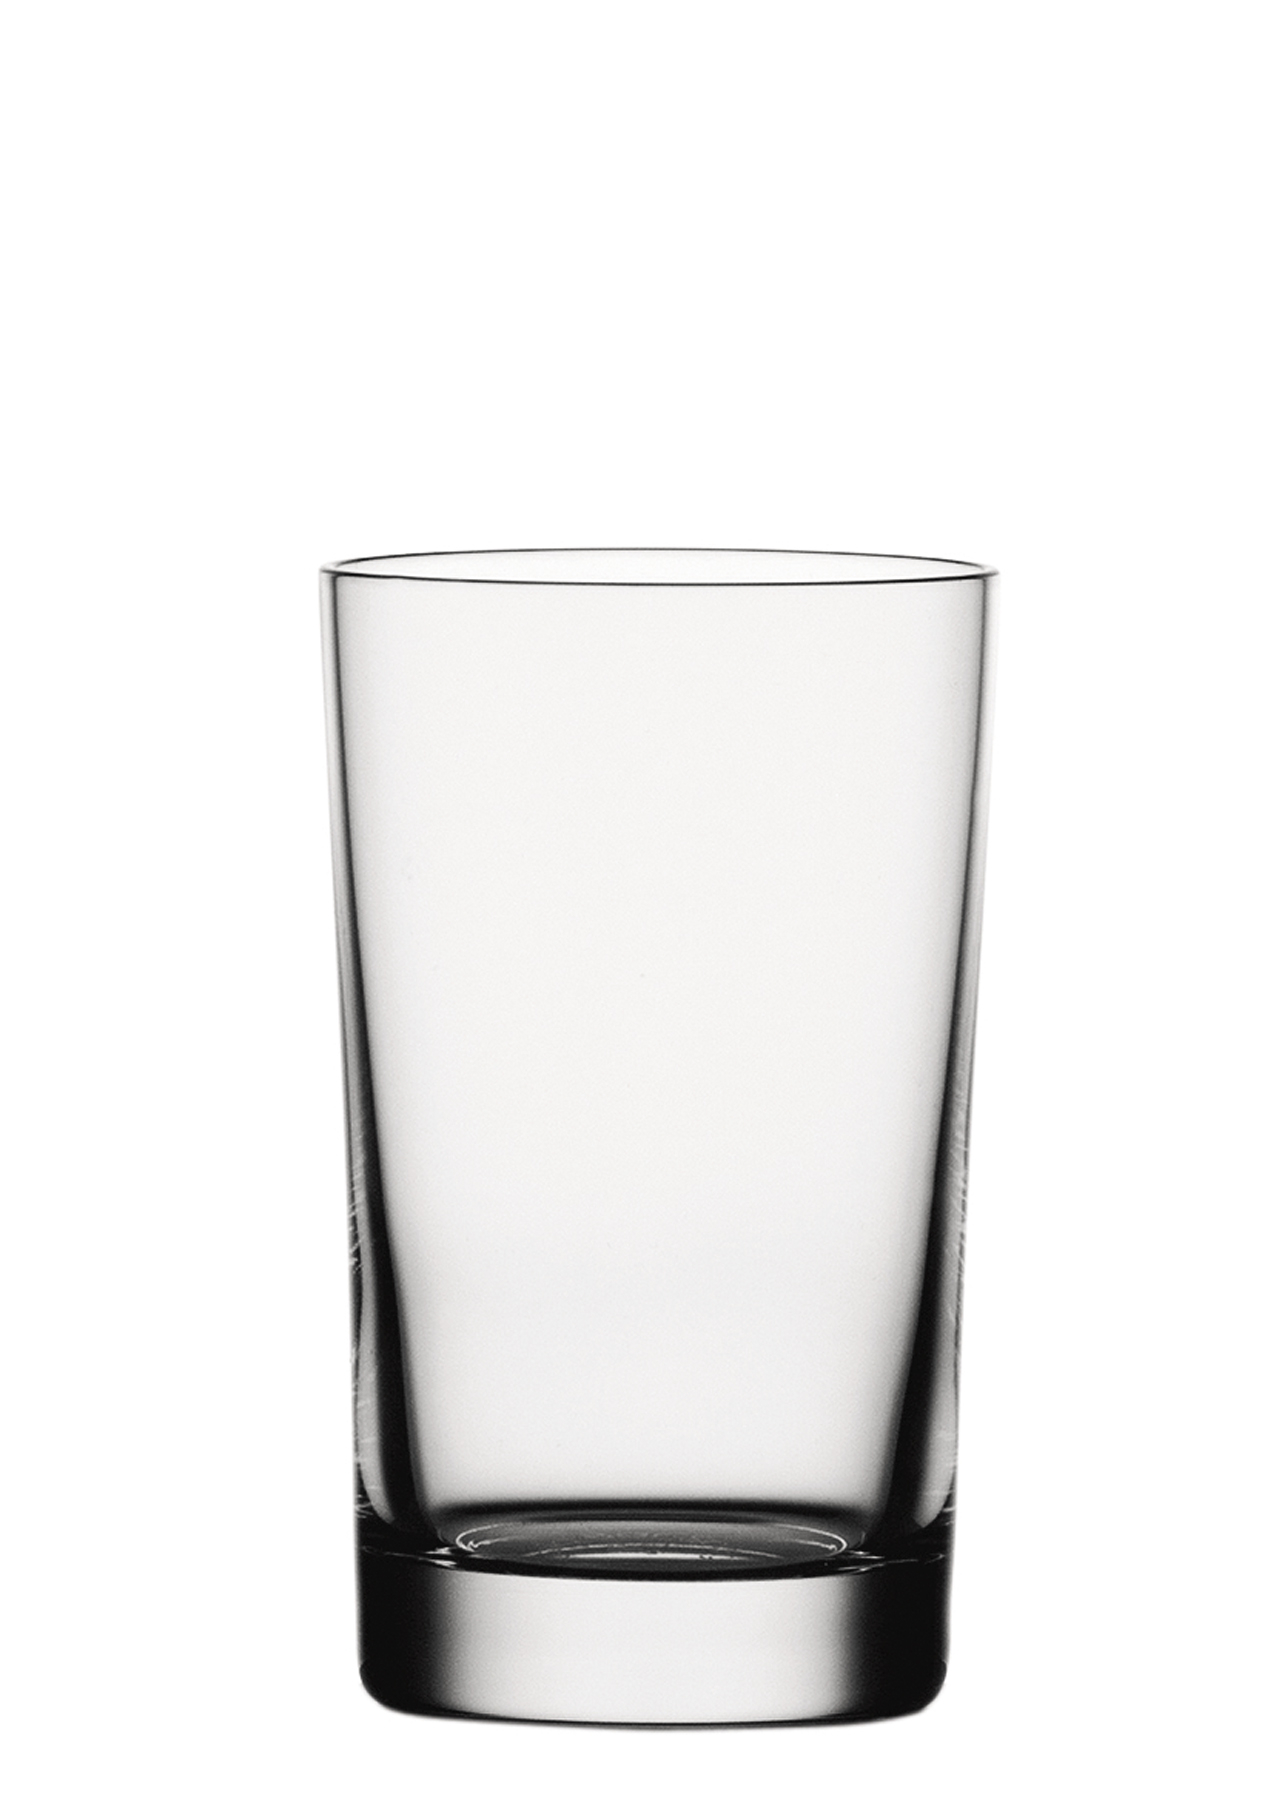 Softdrink glass Classic Bar, Spiegelau - 285ml (1 pc.)